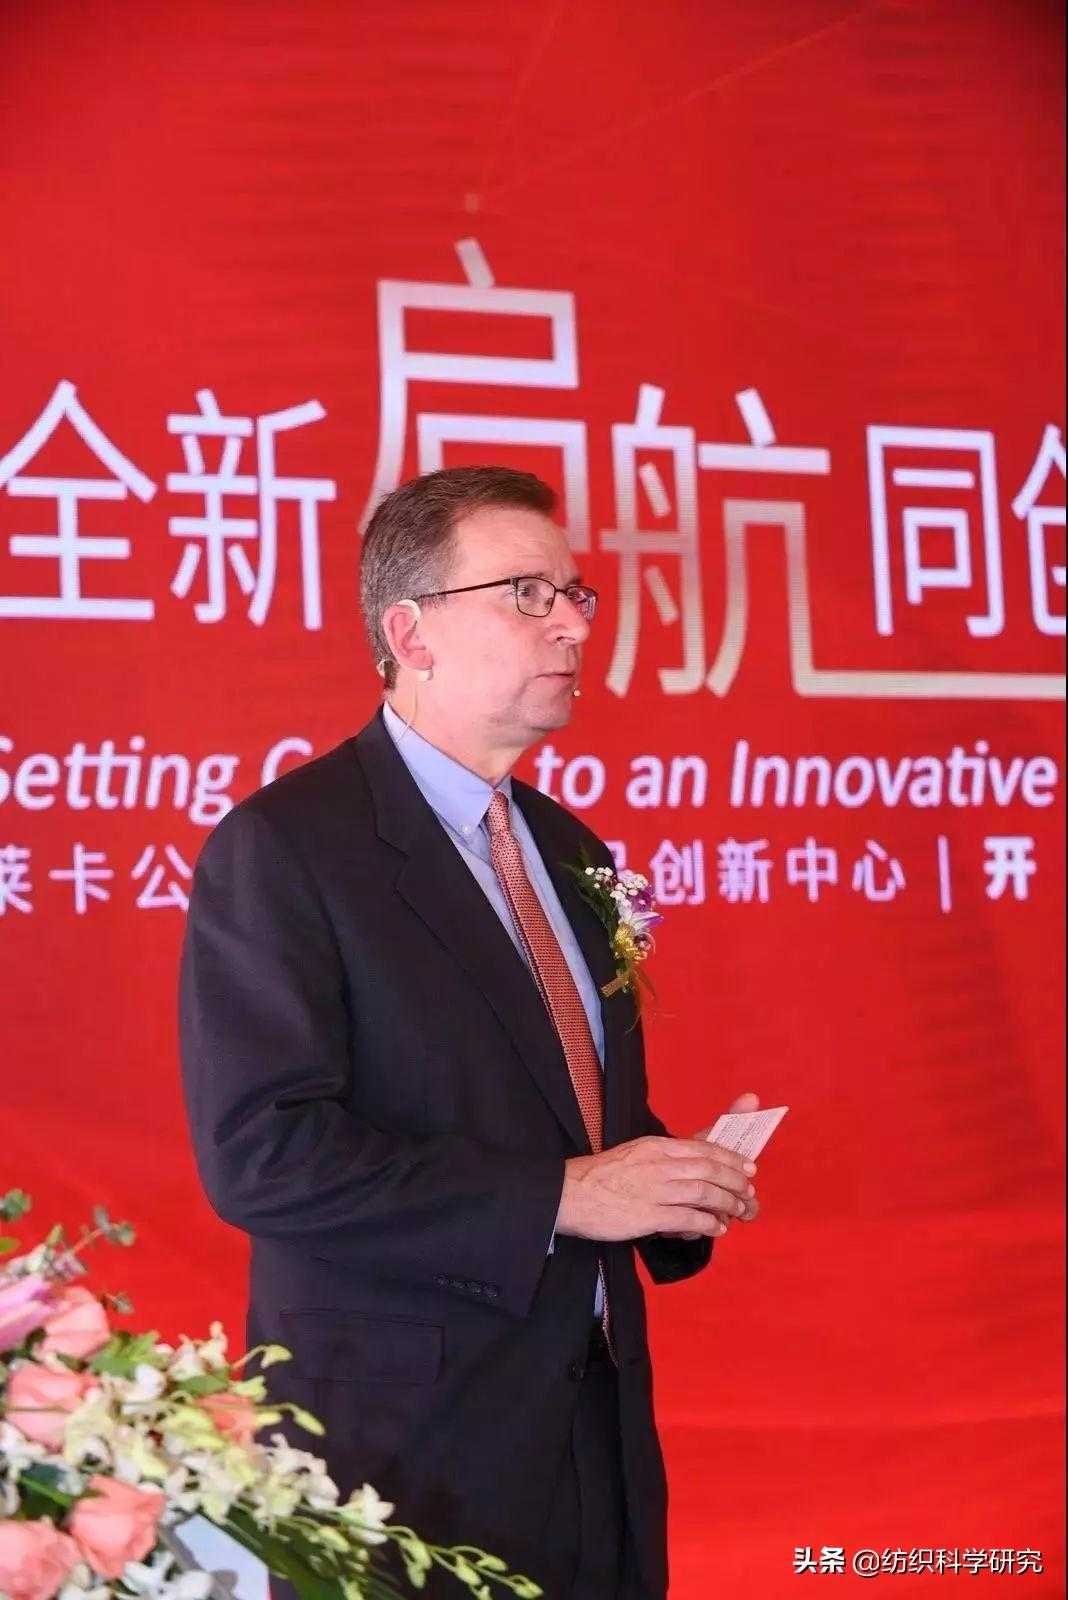 莱卡公司在华成立先进纺织品创新中心